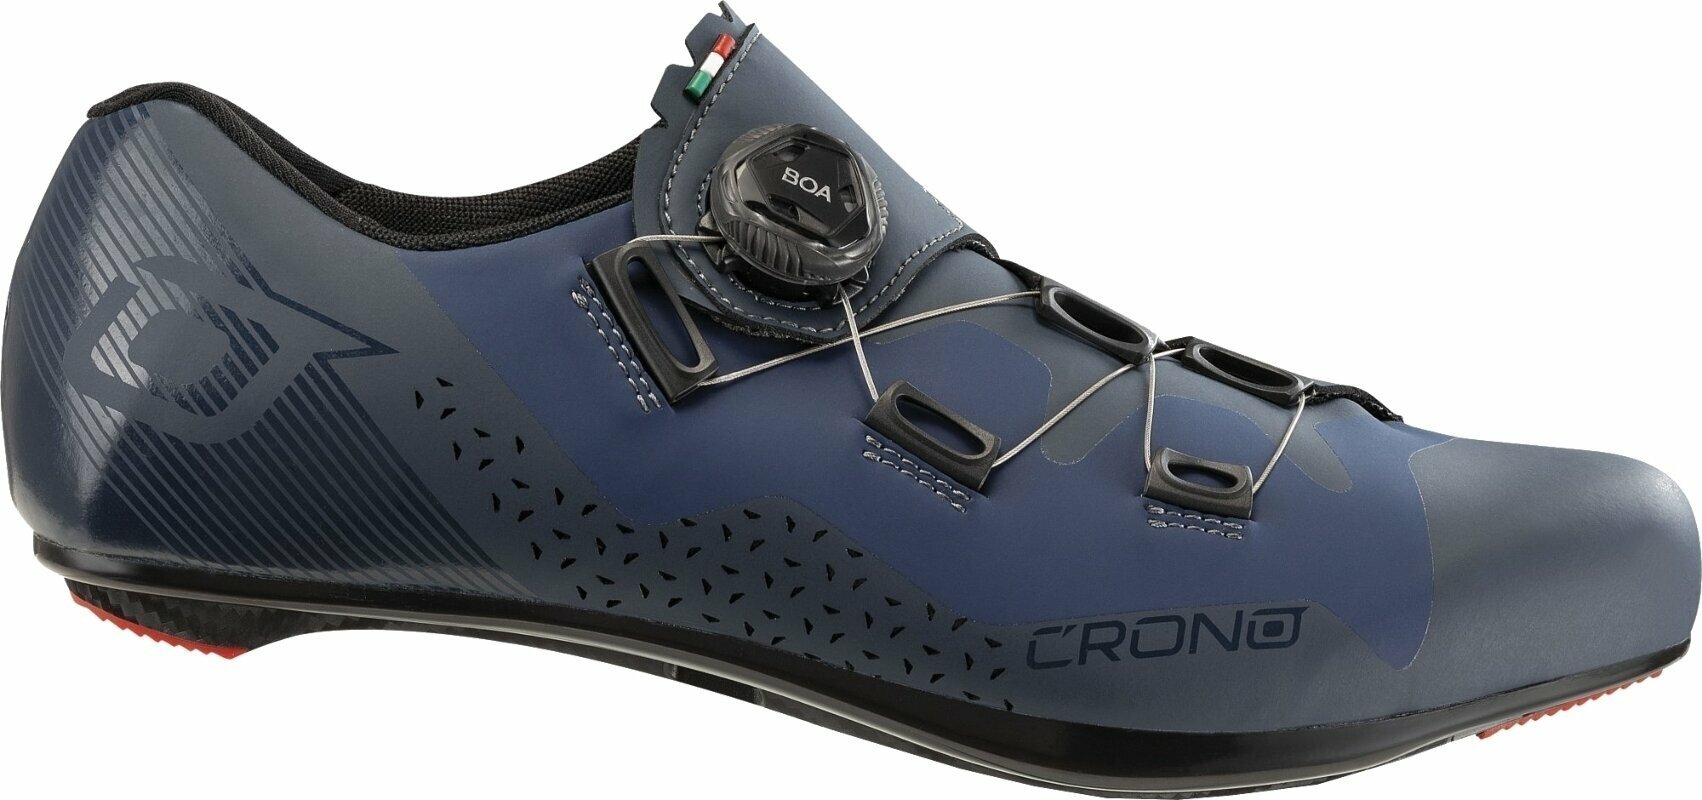 Chaussures de cyclisme pour hommes Crono CR3.5 Road BOA Blue 44 Chaussures de cyclisme pour hommes